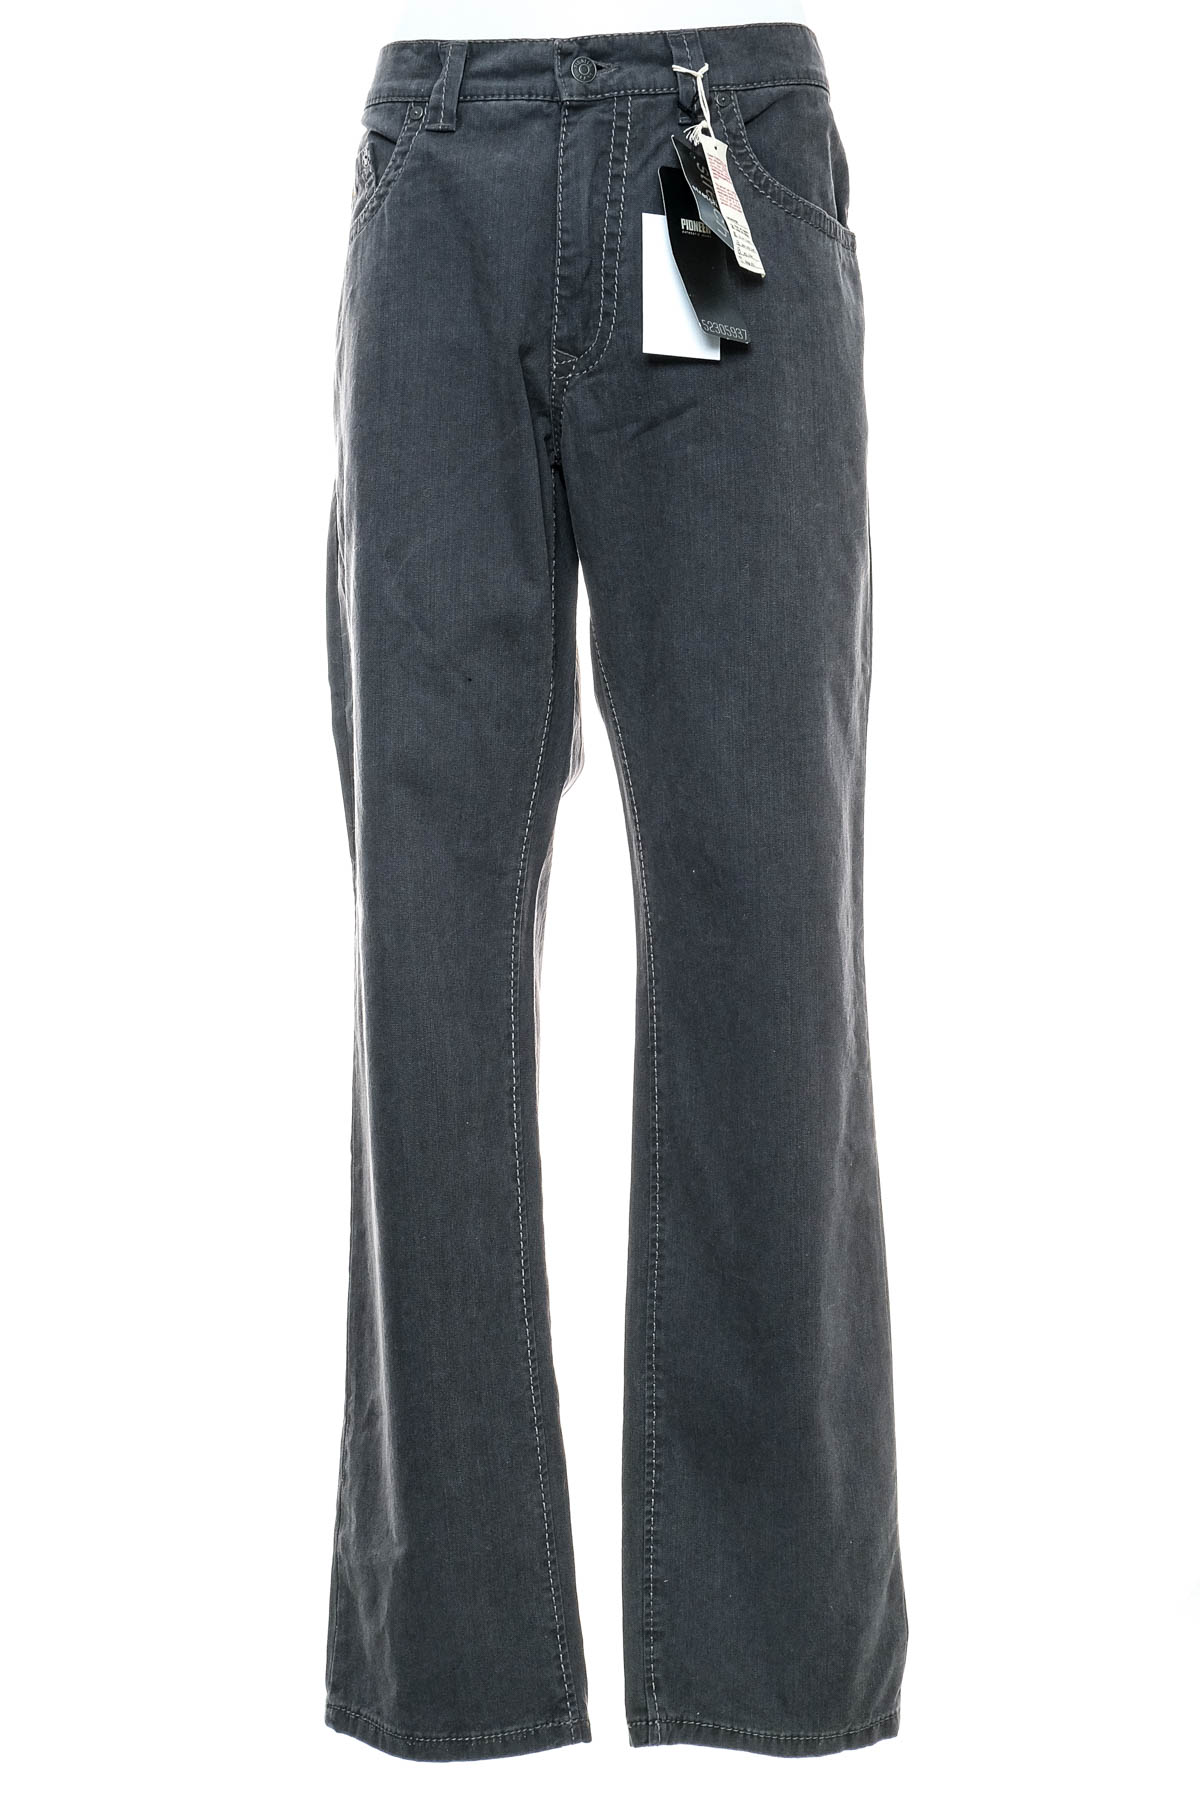 Jeans pentru bărbăți - Pioneer - 0